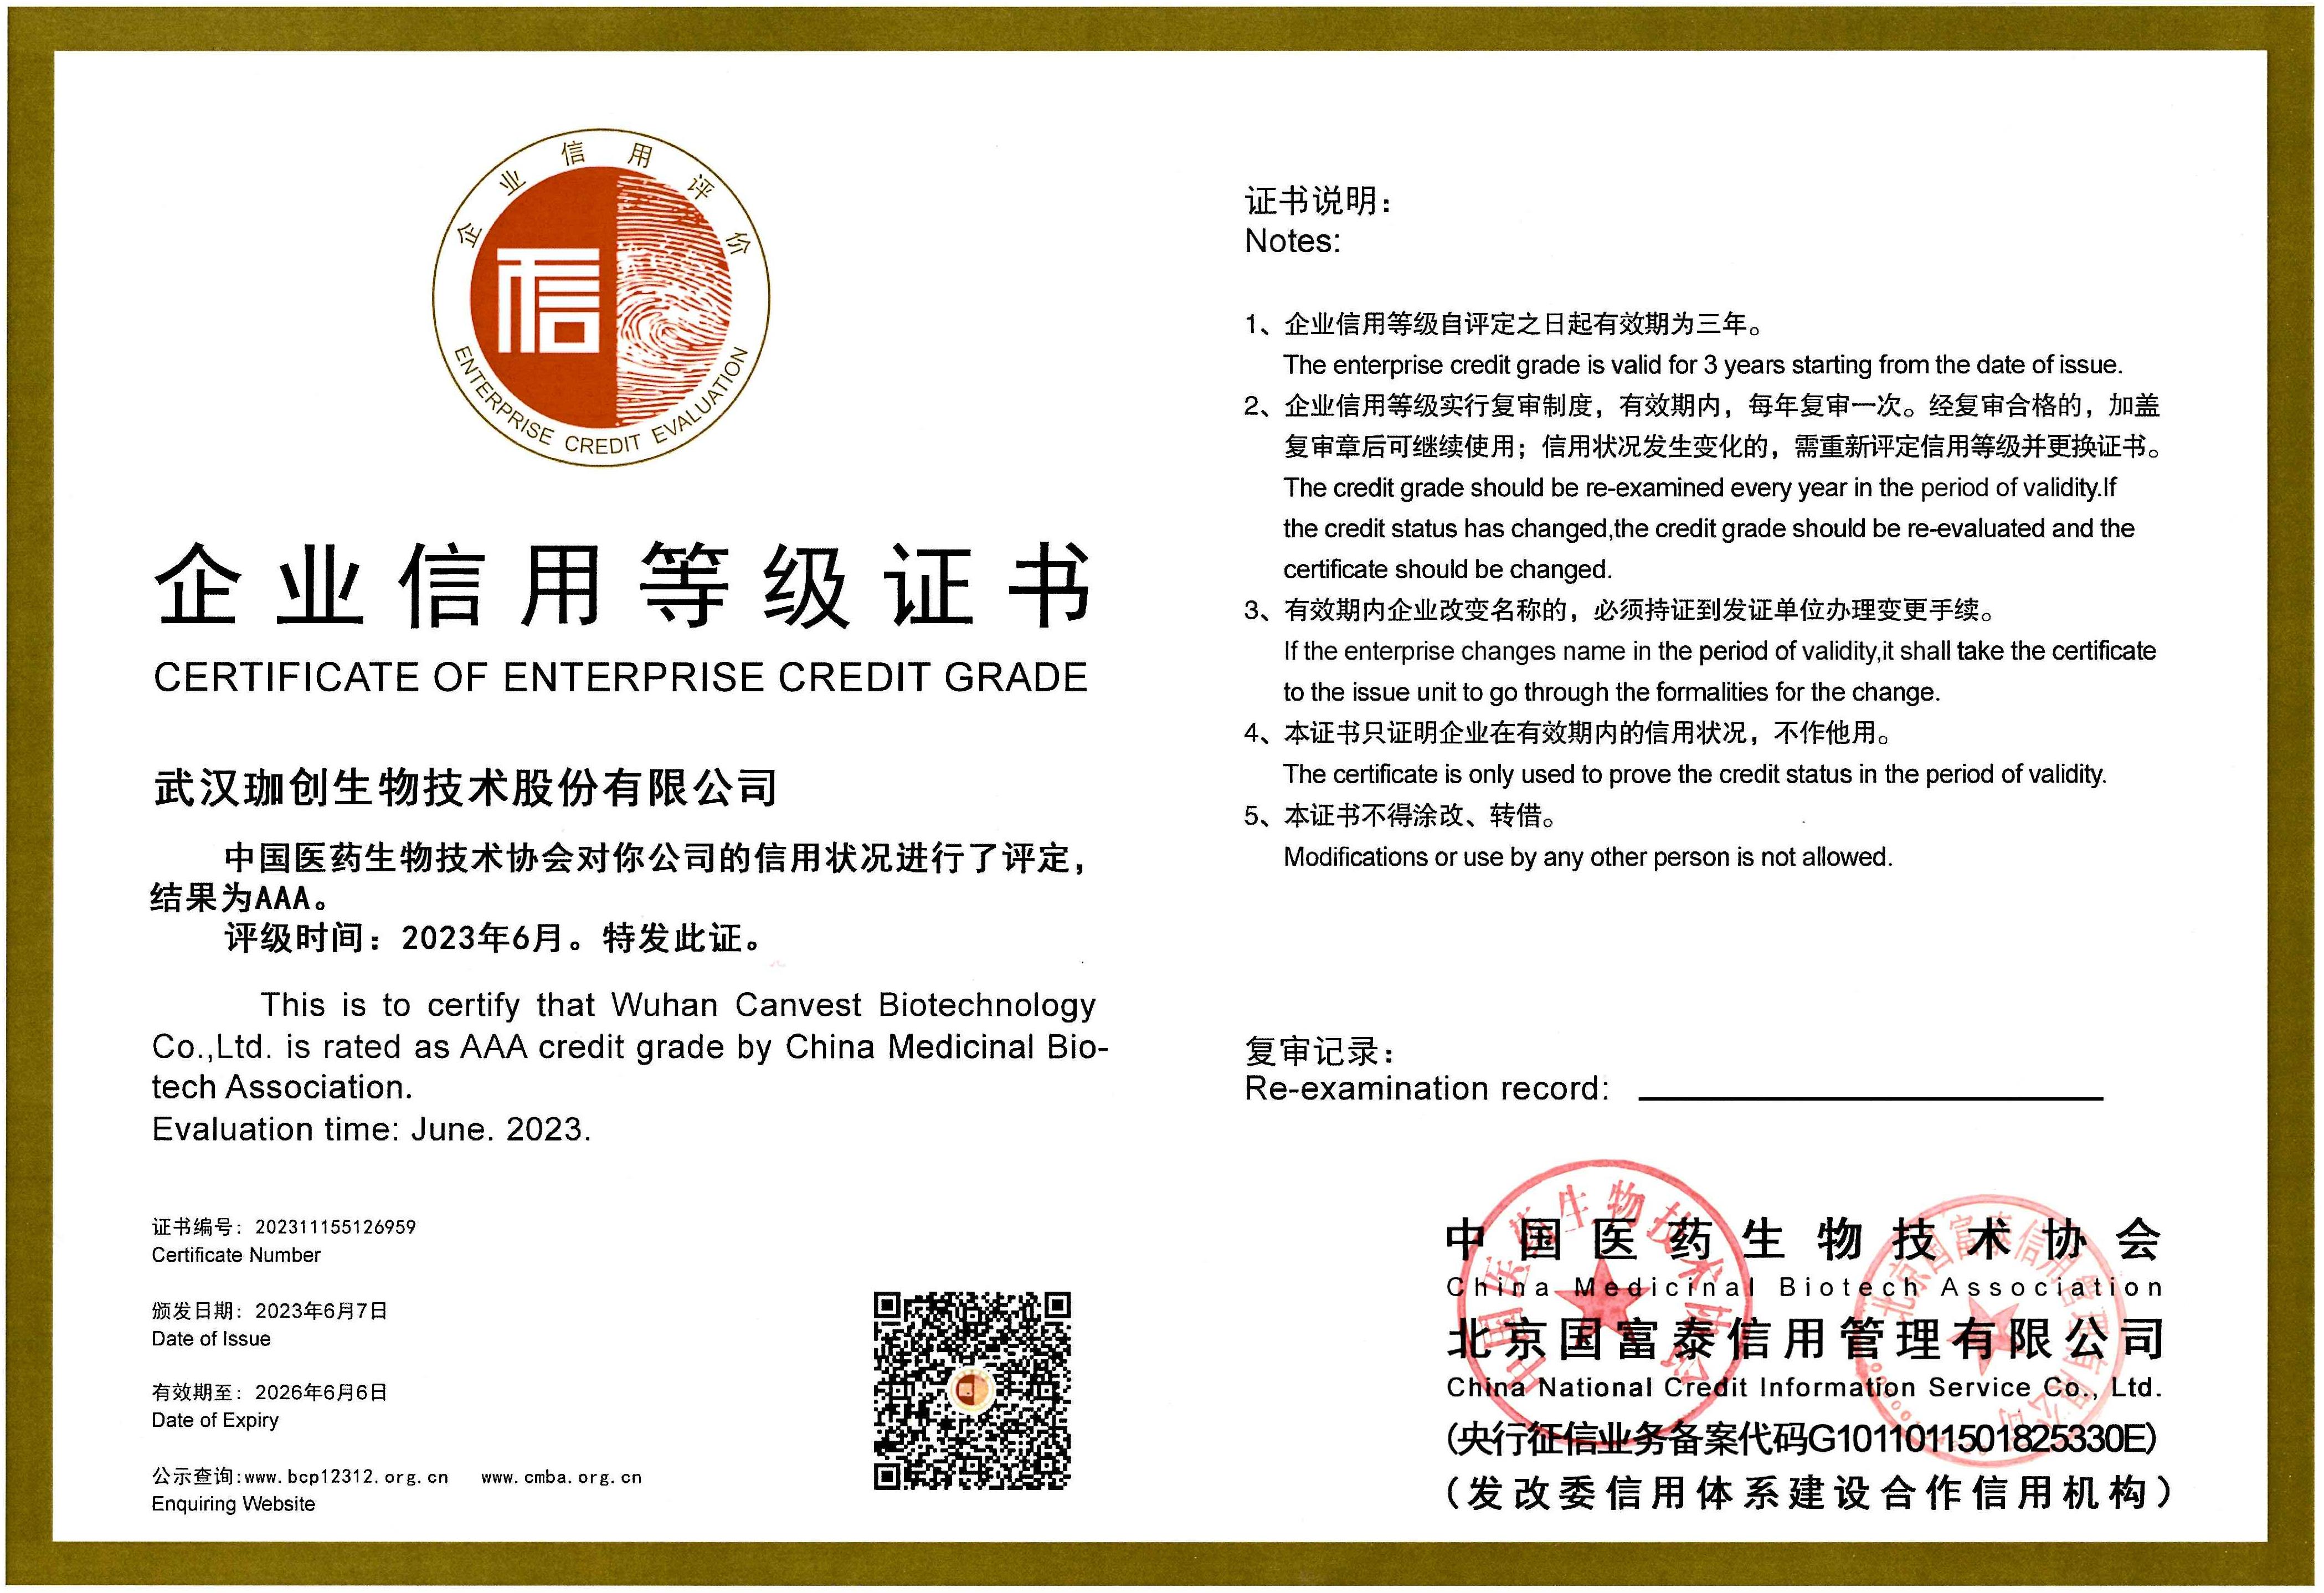 中国医药生物技术协会企业信用等级AAA证书